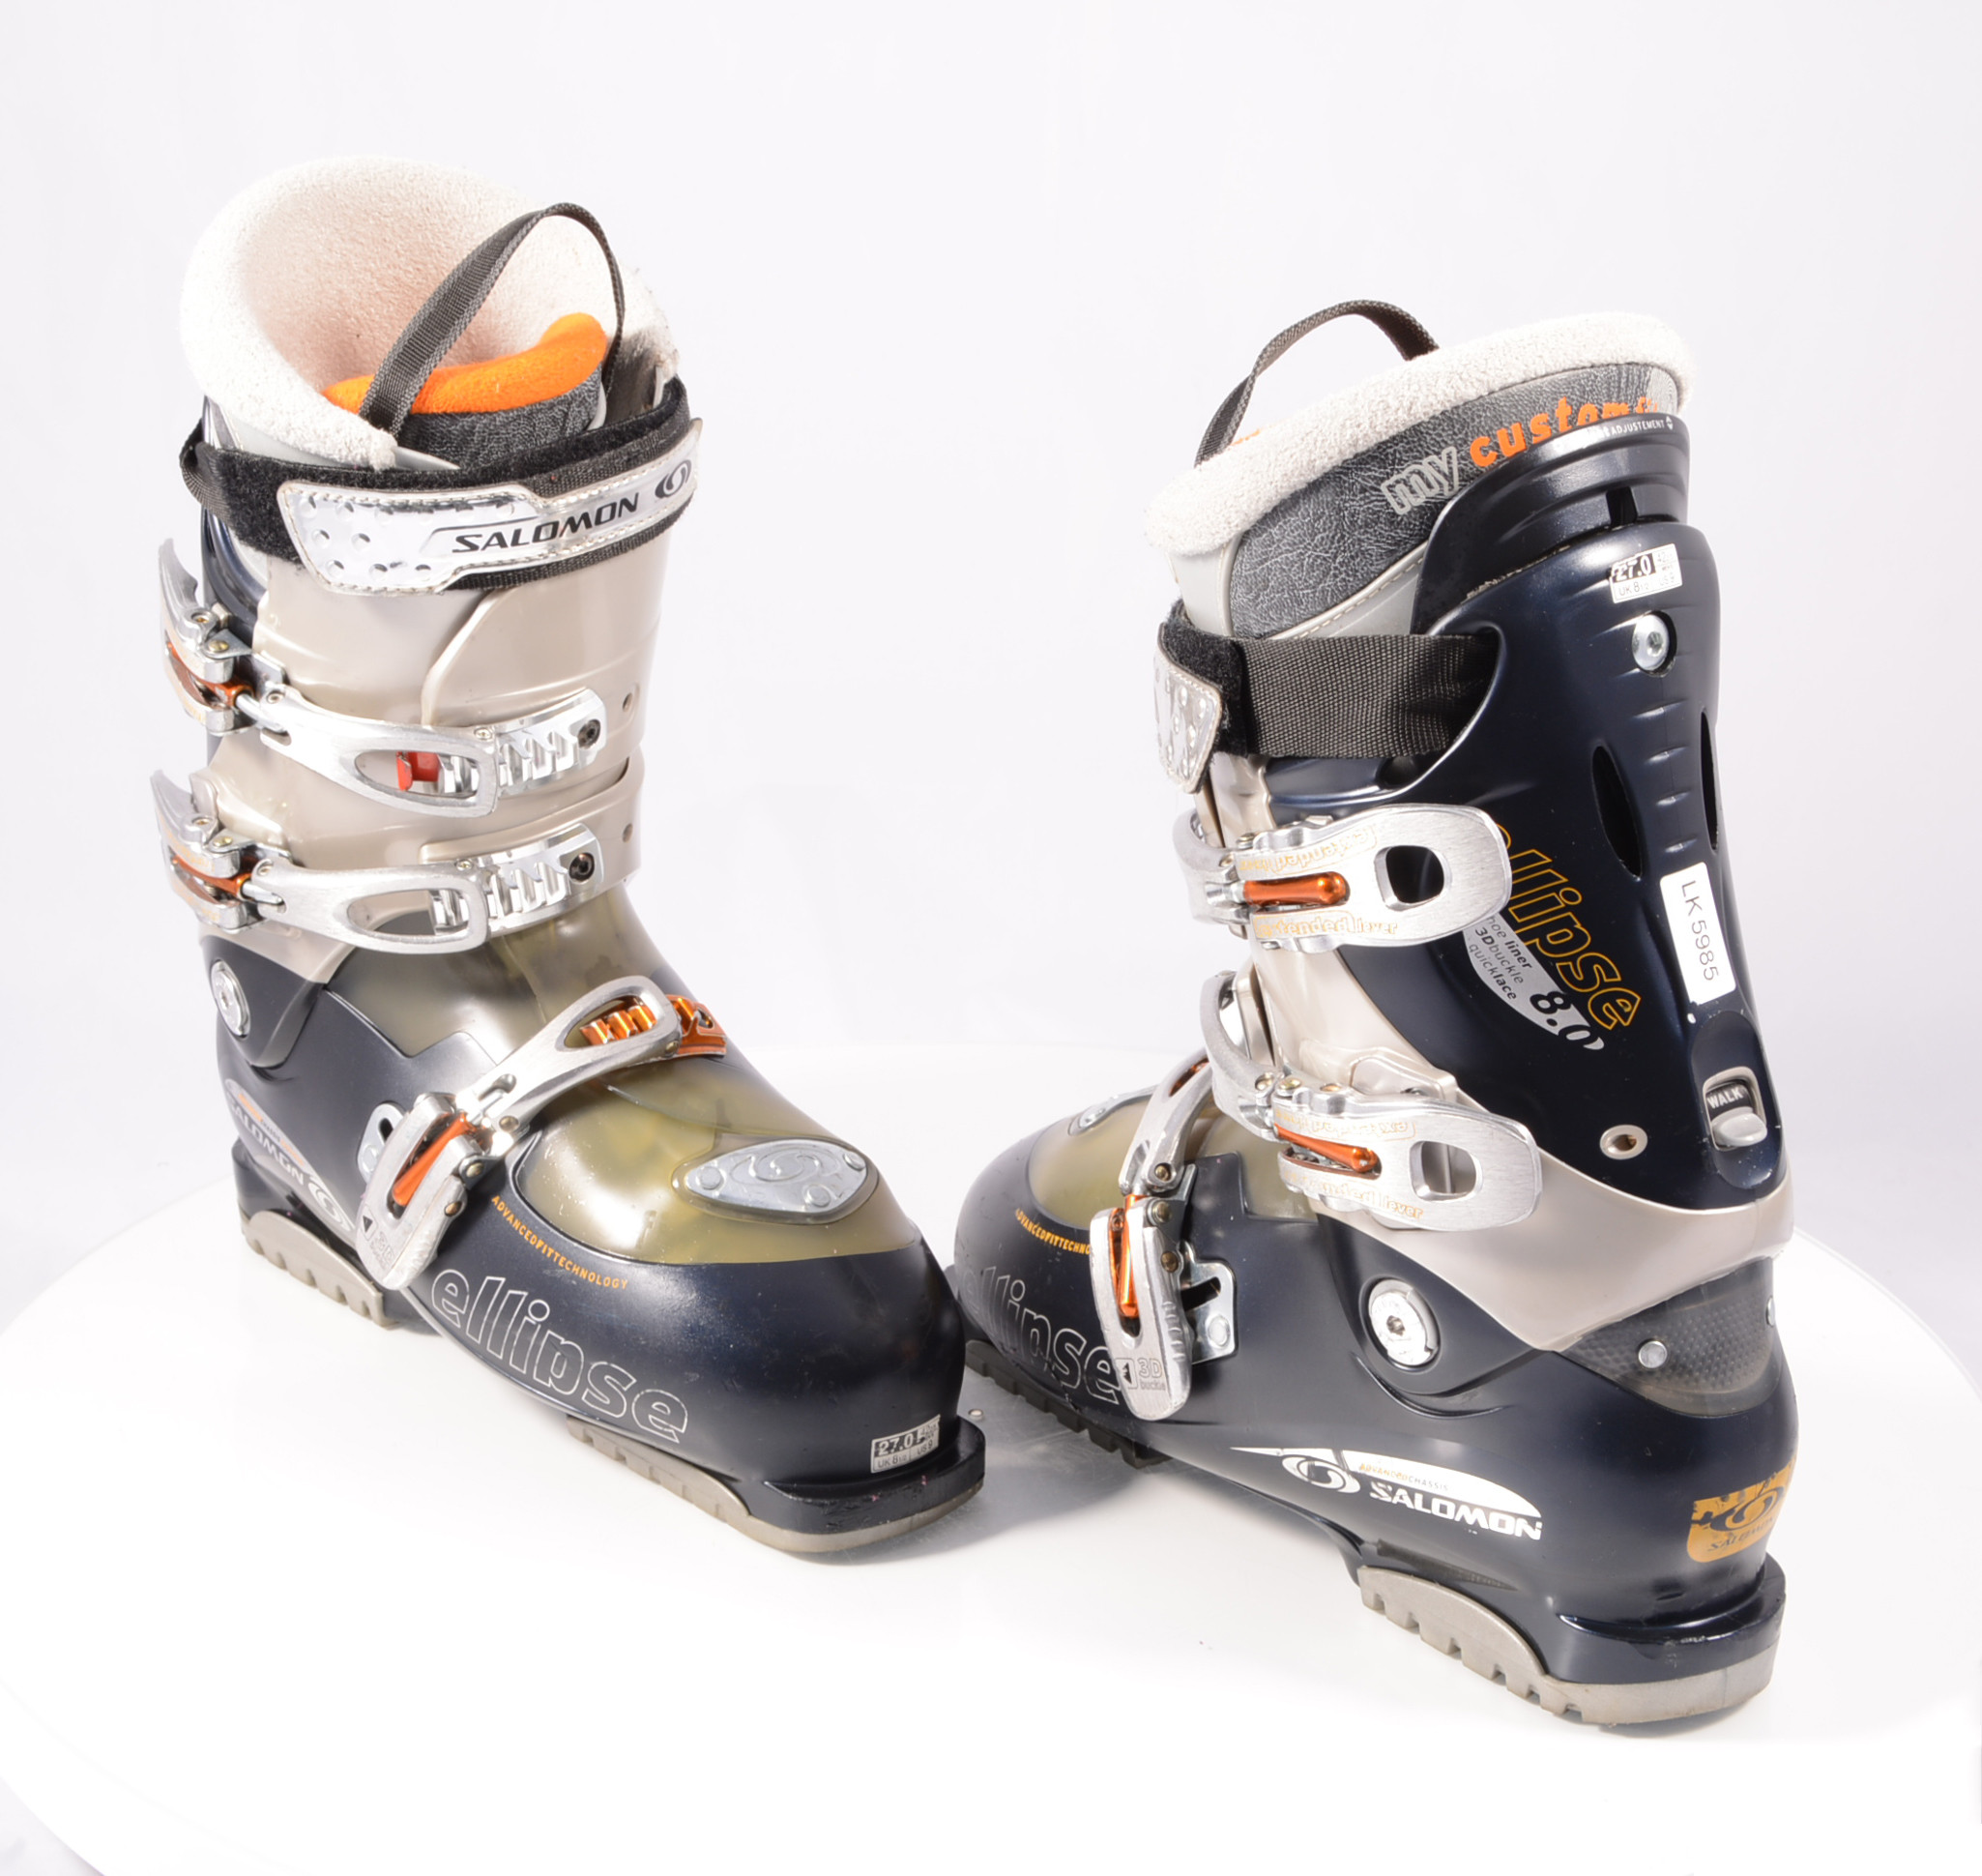 ski boots ELLIPSE 8.0 SENSIFIT, CUSTOM FIT, 3D buckle, SKI/WALK, adj., CANTING, ADVANCED fit - Mardosport.com